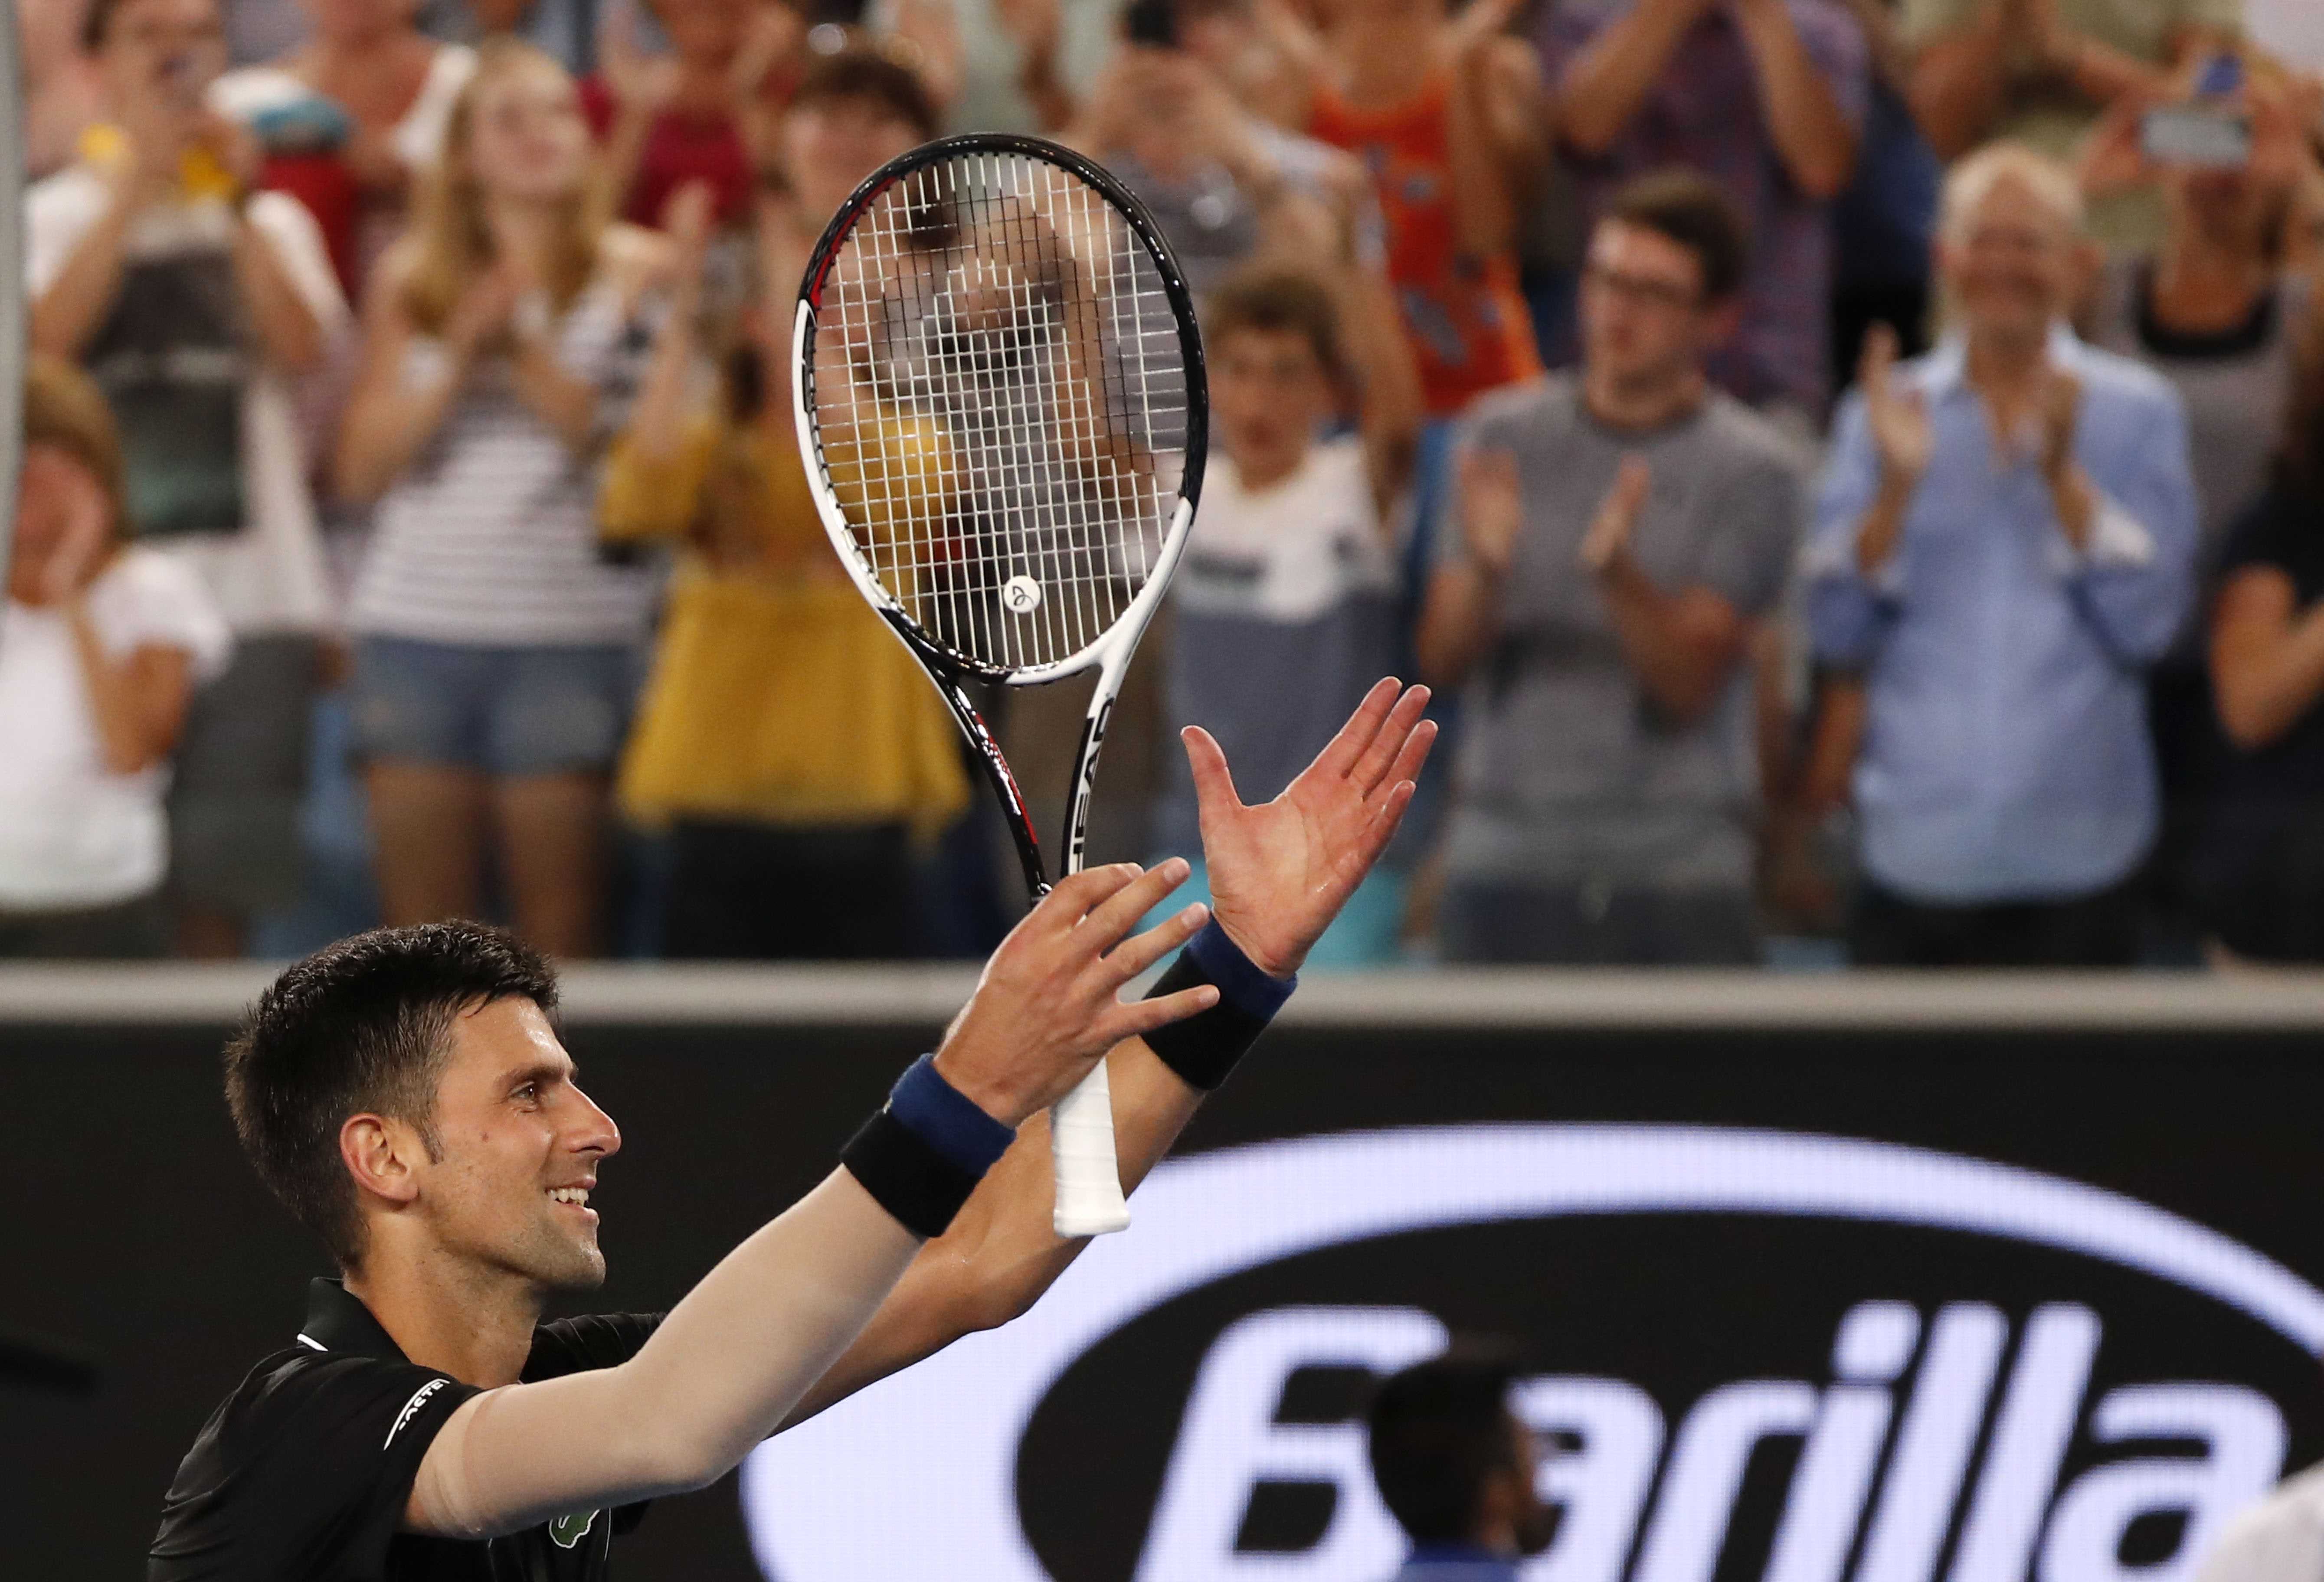 Tennis: Djokovic eases past Ramos-Vinolas